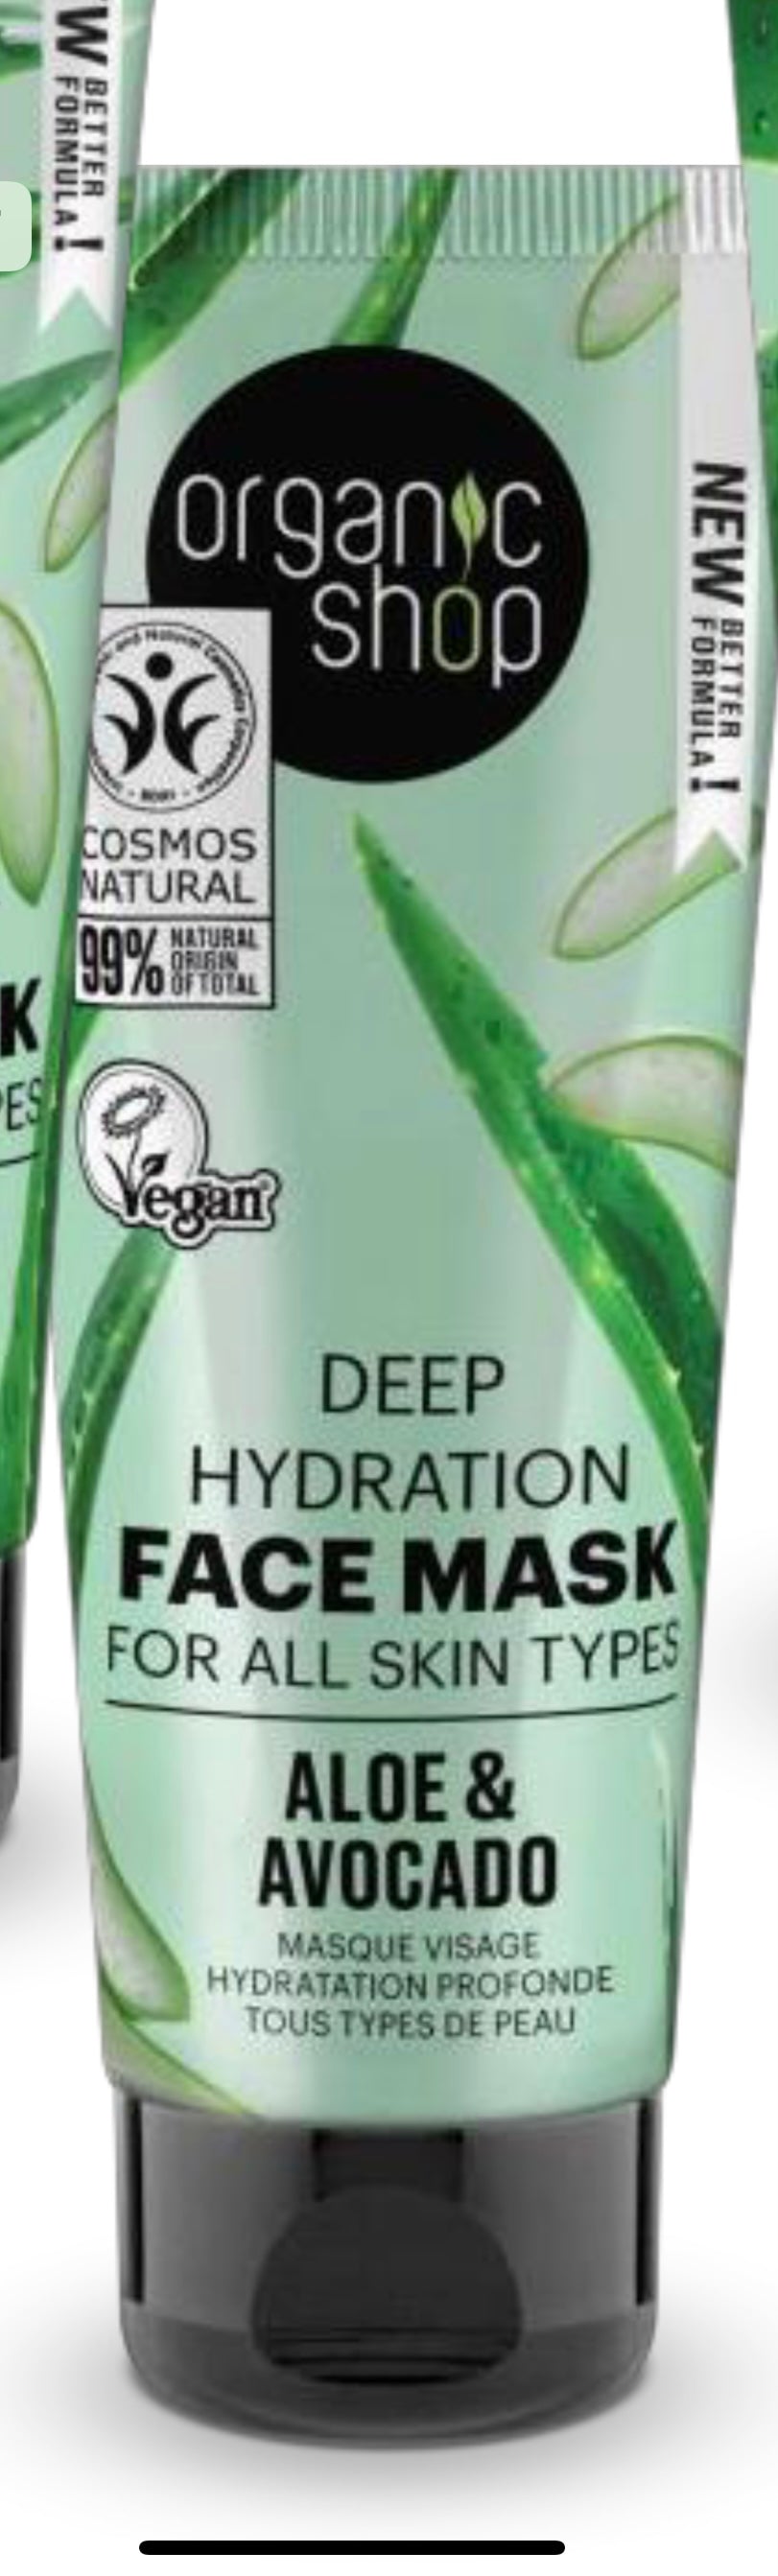 Maschera Viso super idratante Aloe Avocado - per tutti i tipi di pelle